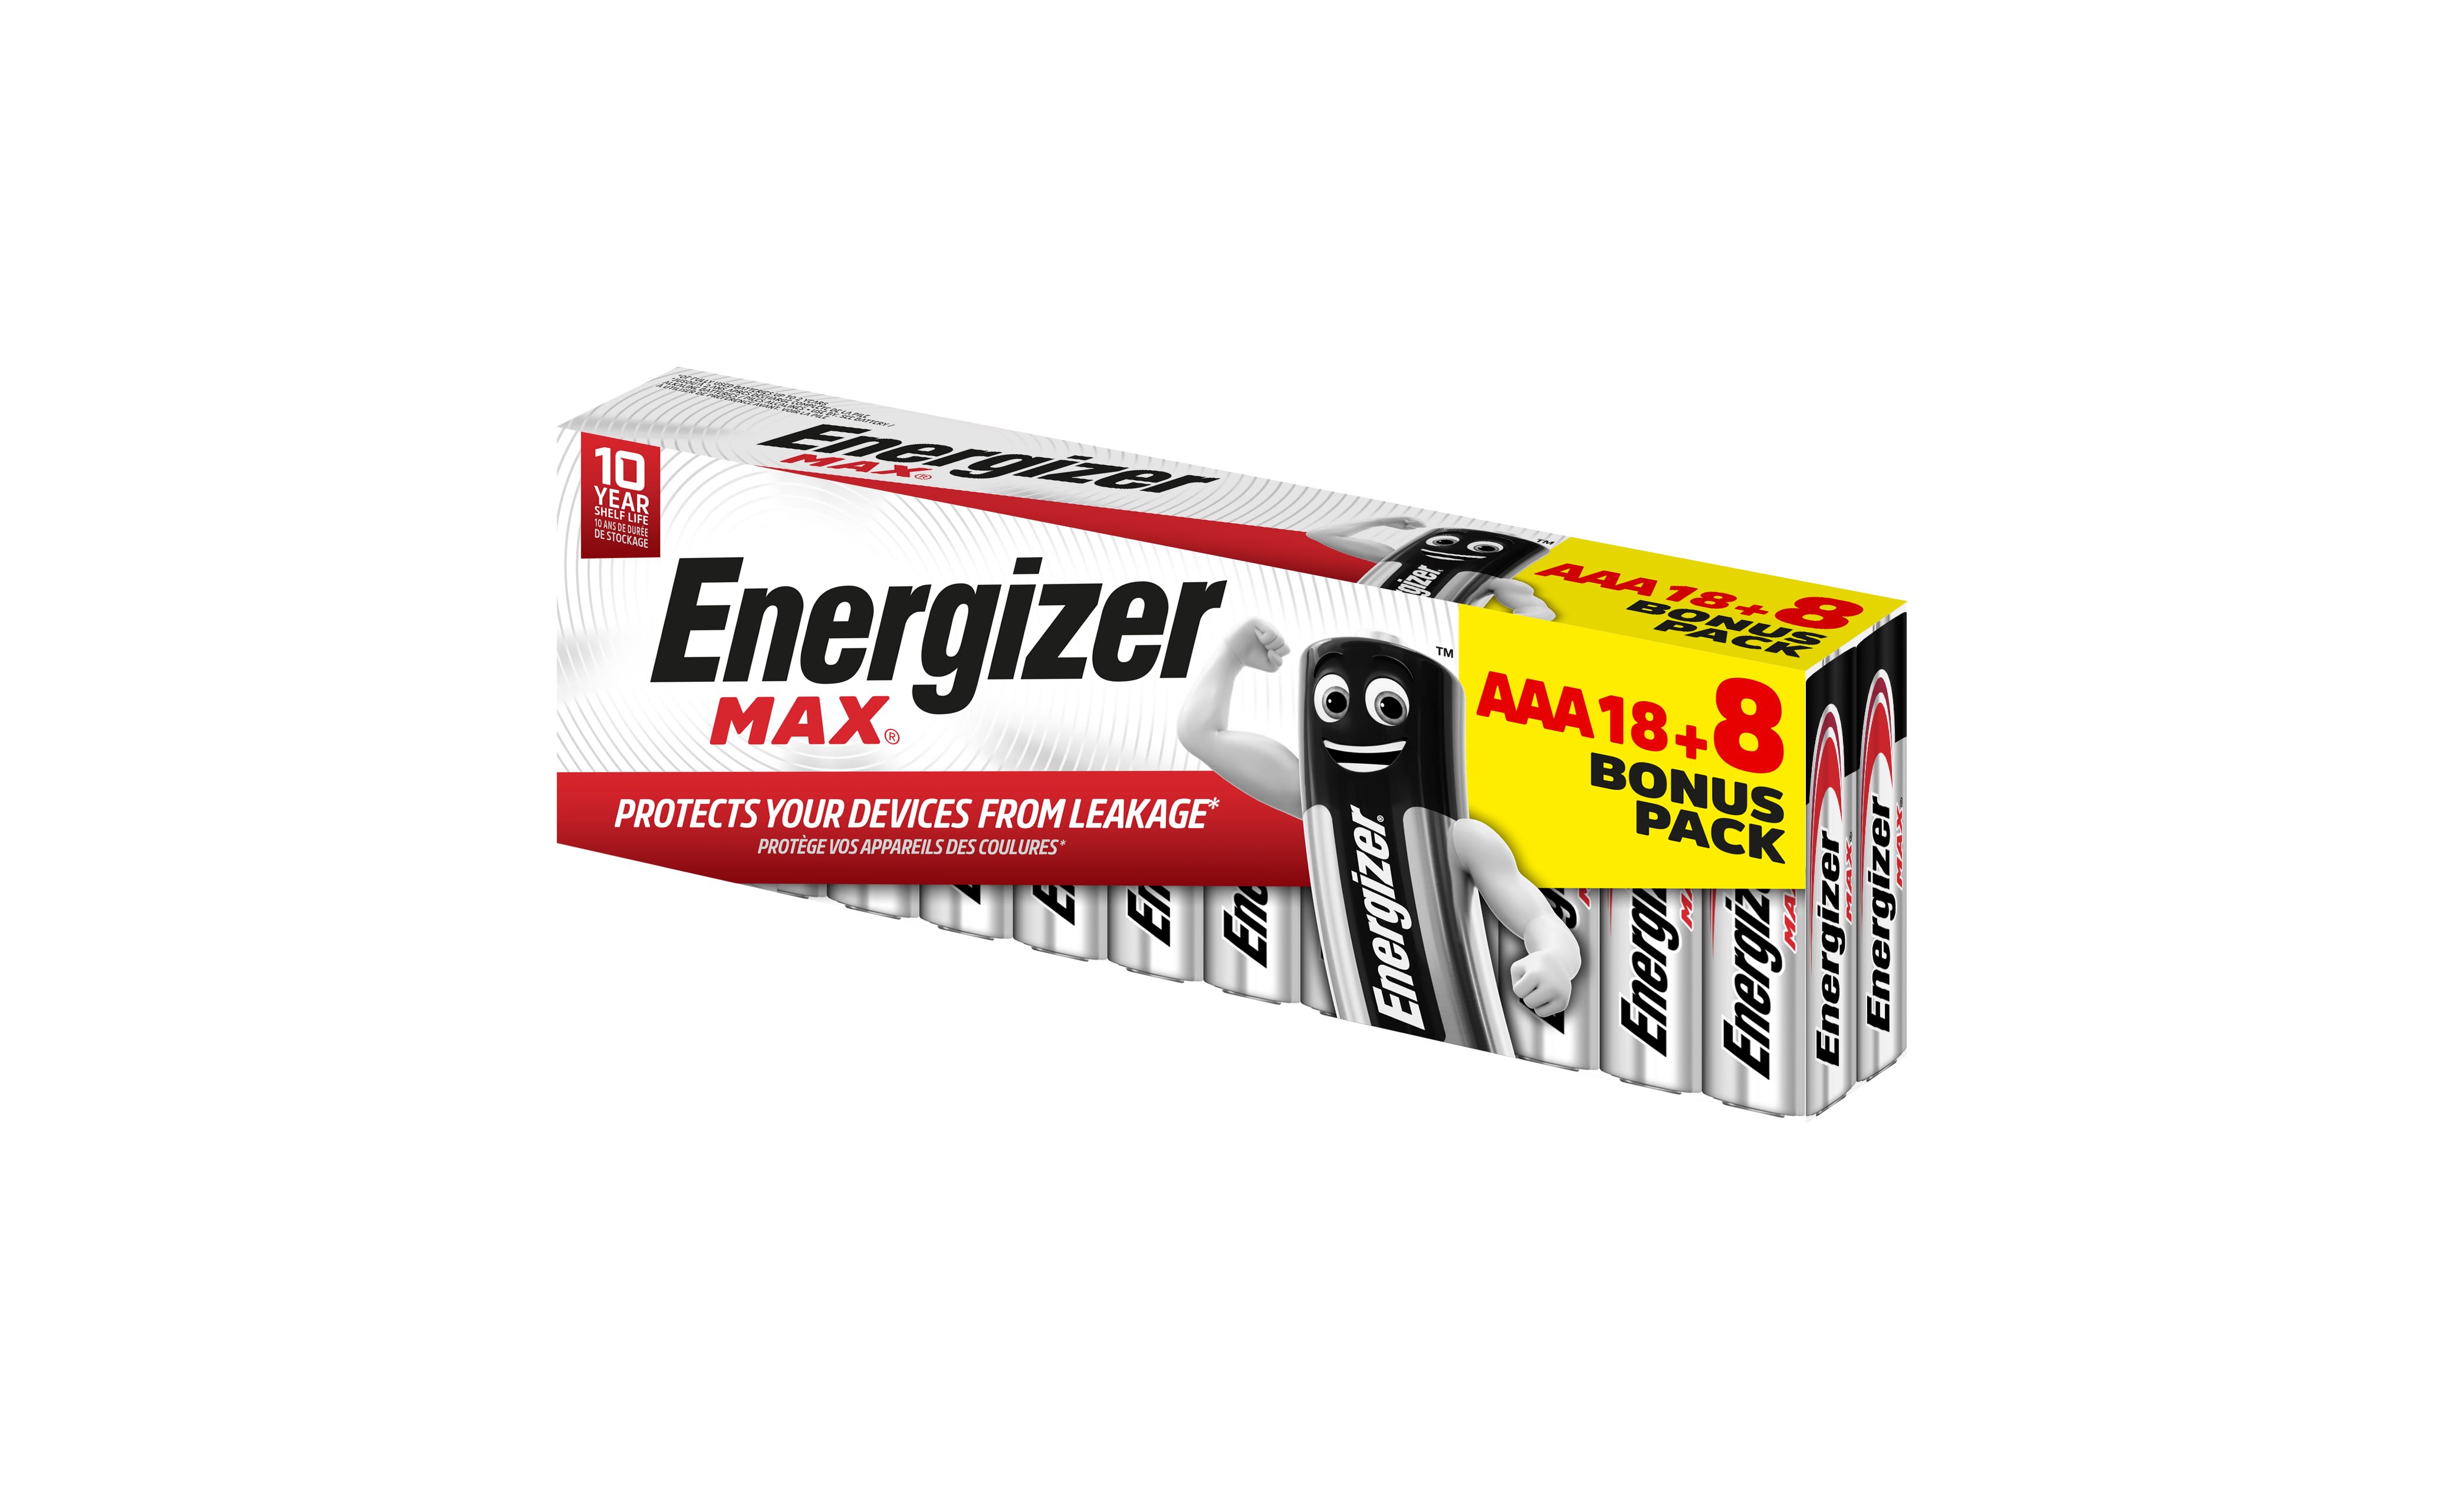 Energizer - Pile Max AAA x 18+8 sans risque pour vos appareils avec la garantie 0 coulure